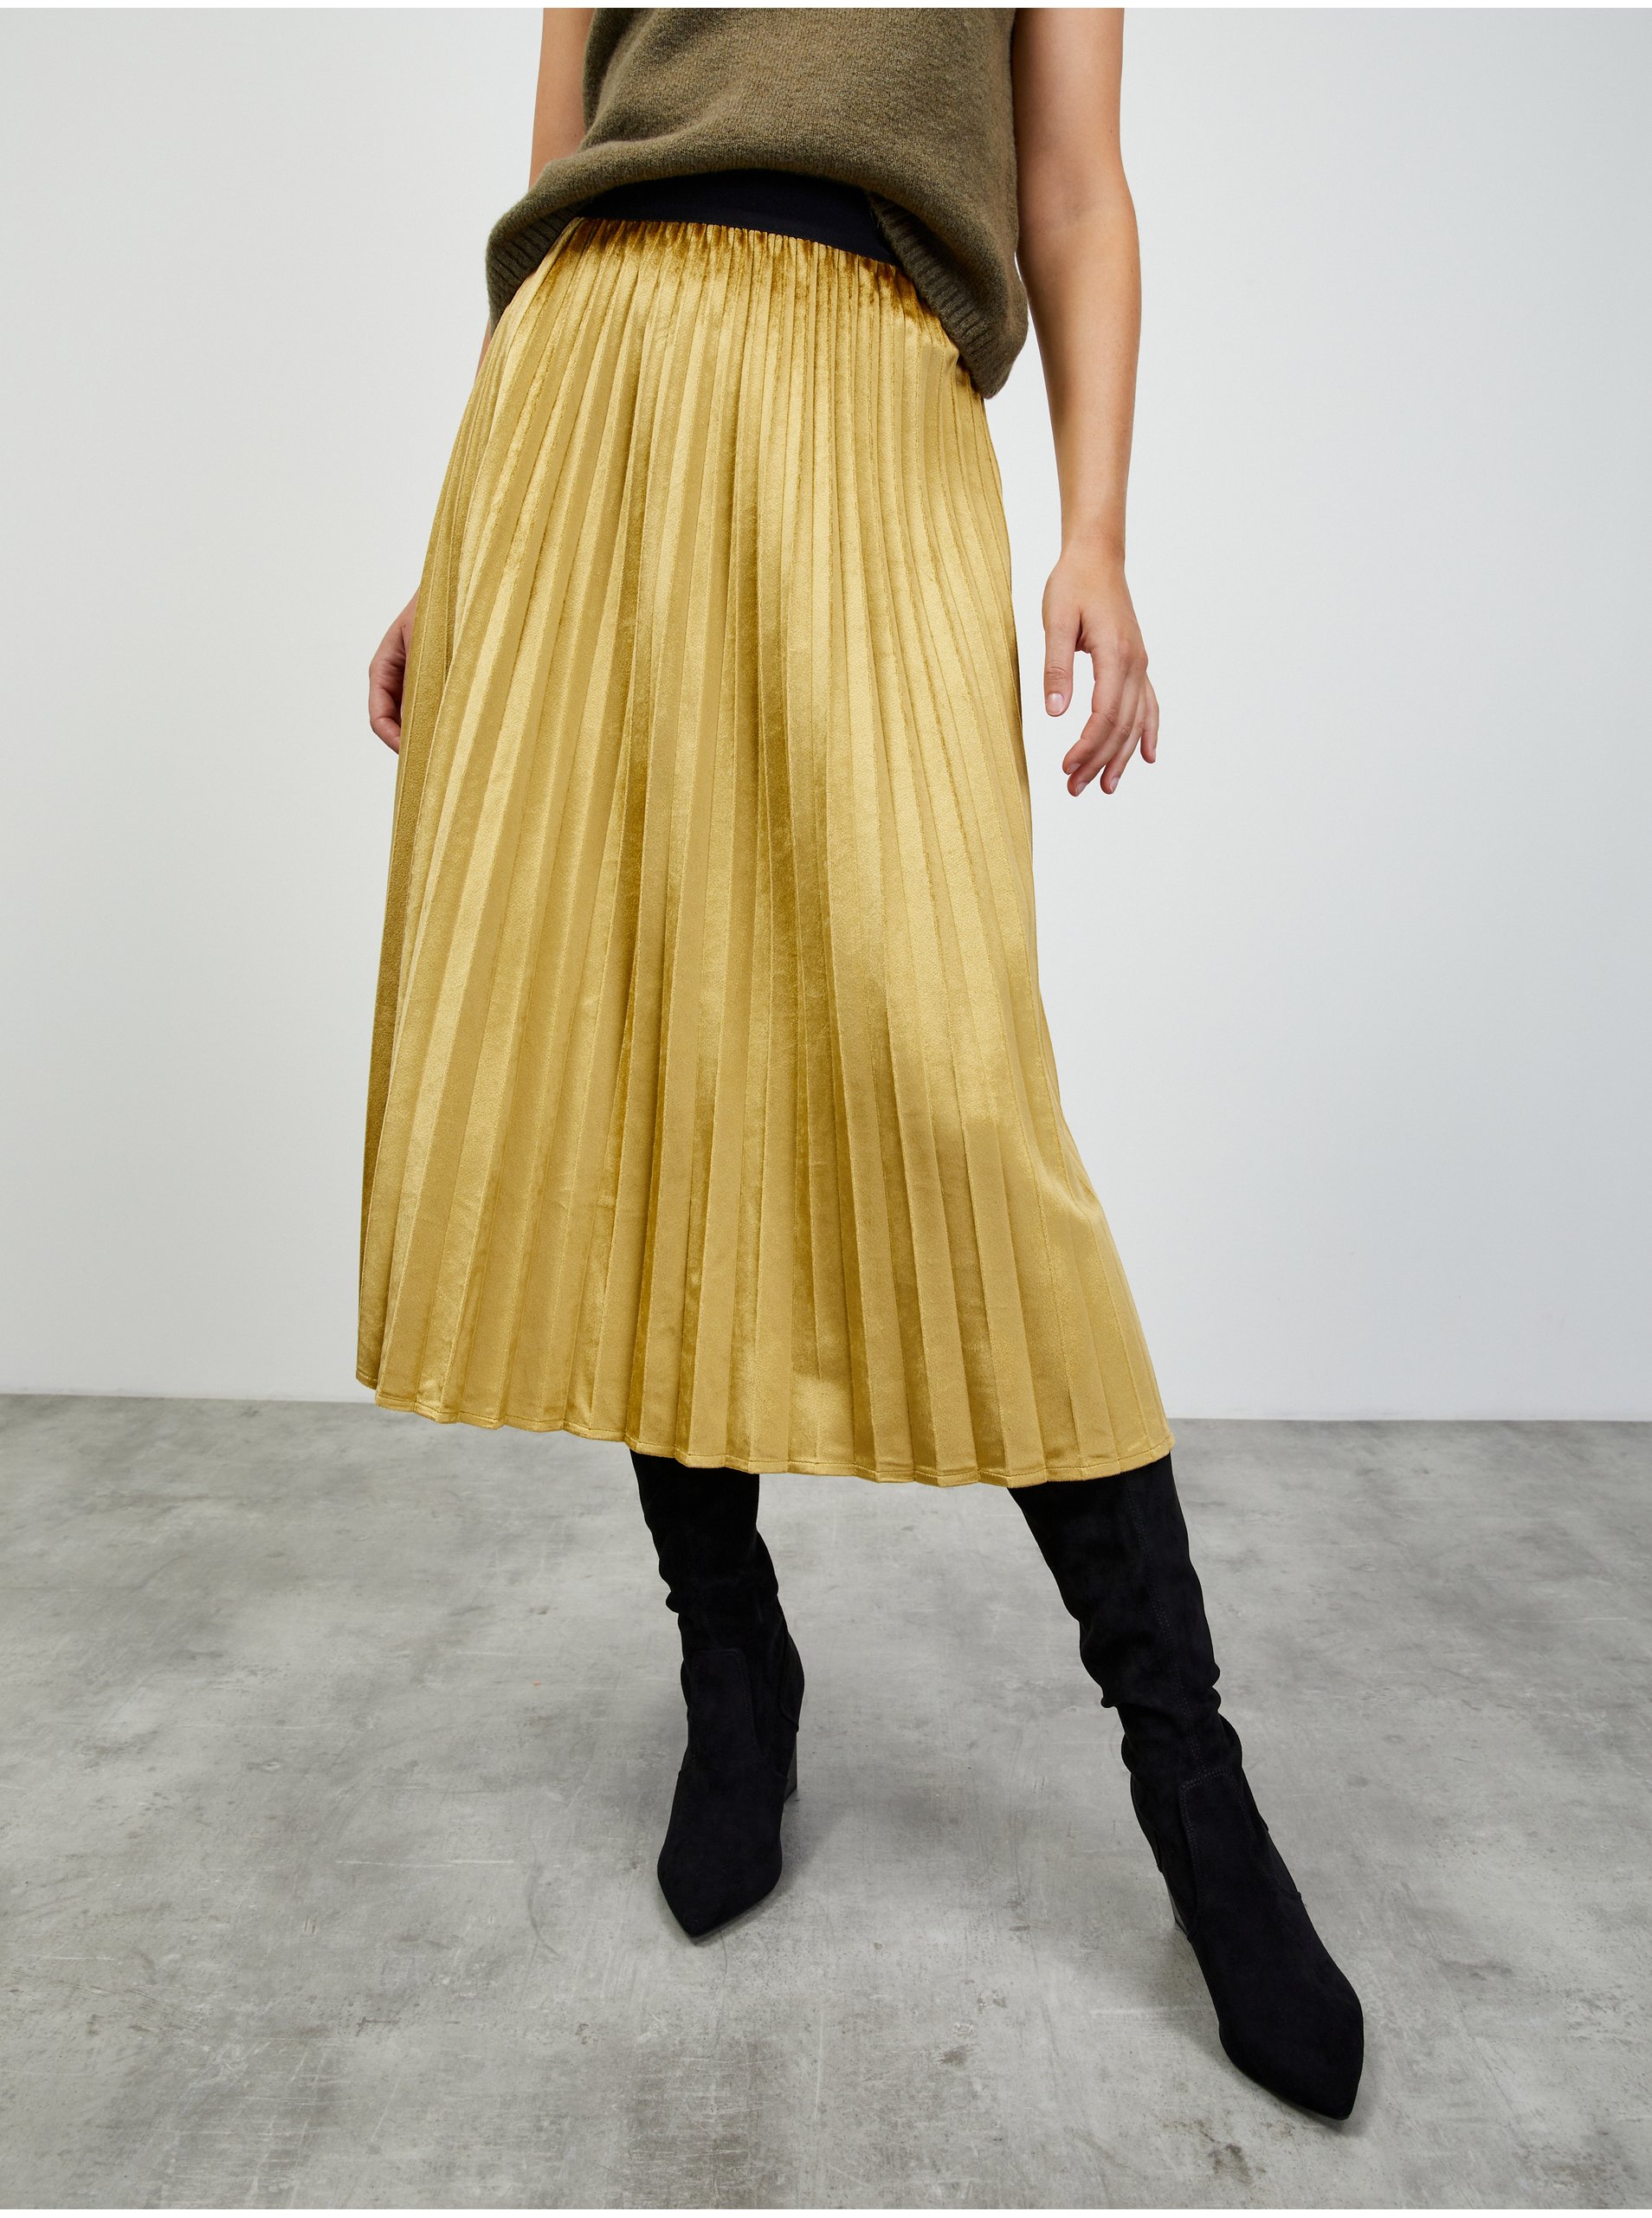 Lacno Plisovaná midi sukňa v zlatej farbe ZOOT.lab Nova